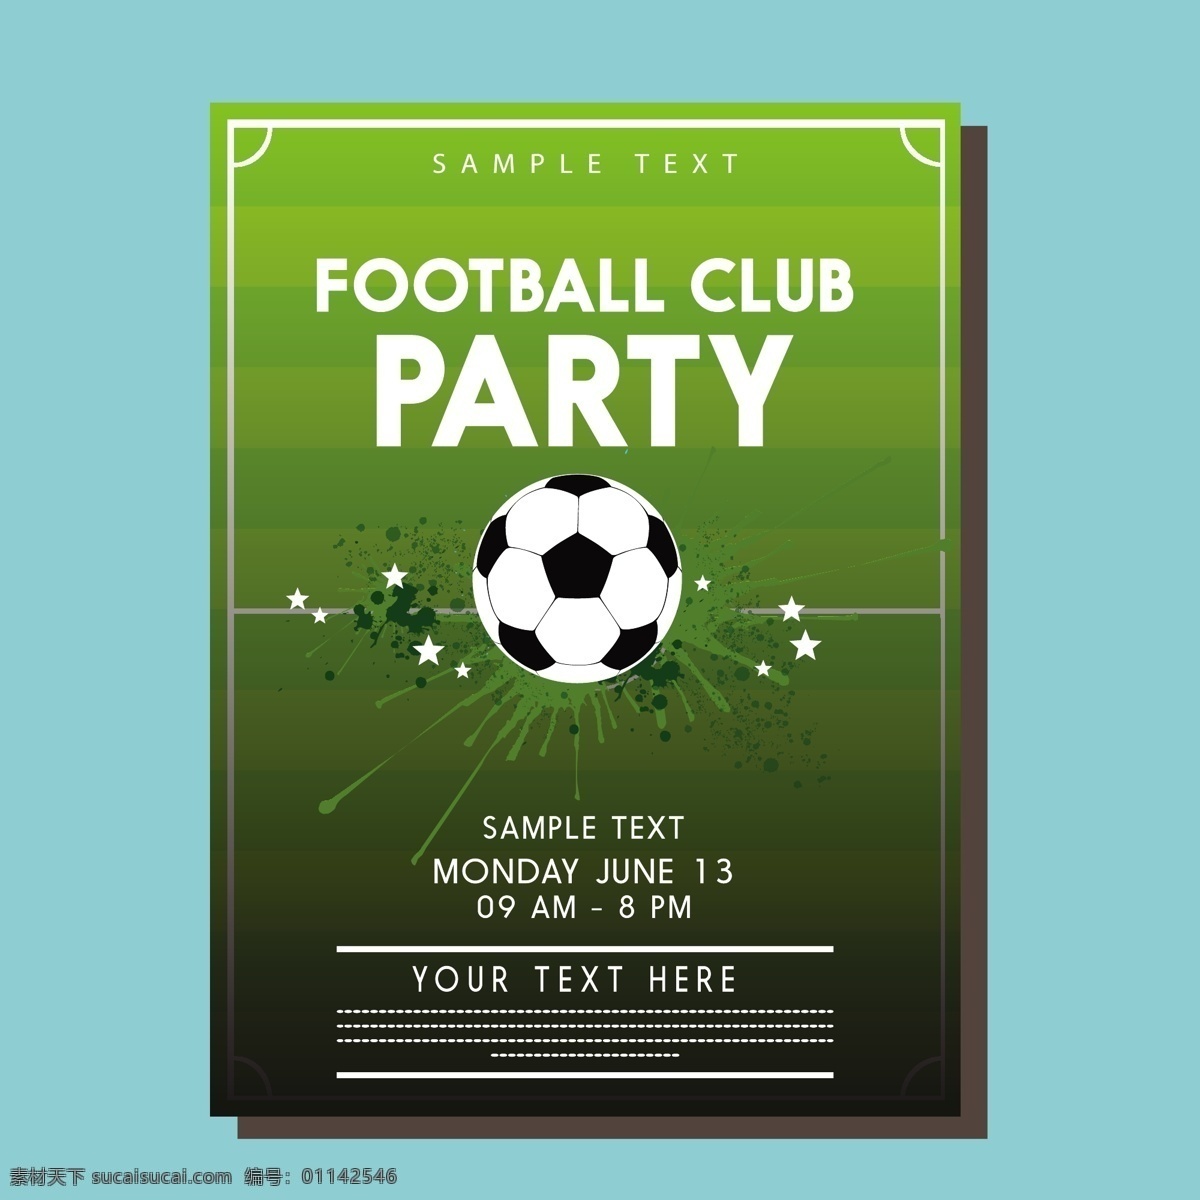 足球比赛 宣传海报 广告背景 广告 背景 背景素材 足球 比赛 宣传 海报 材料 绿色 绿色背景 底纹 背景底纹 黑白 五角星